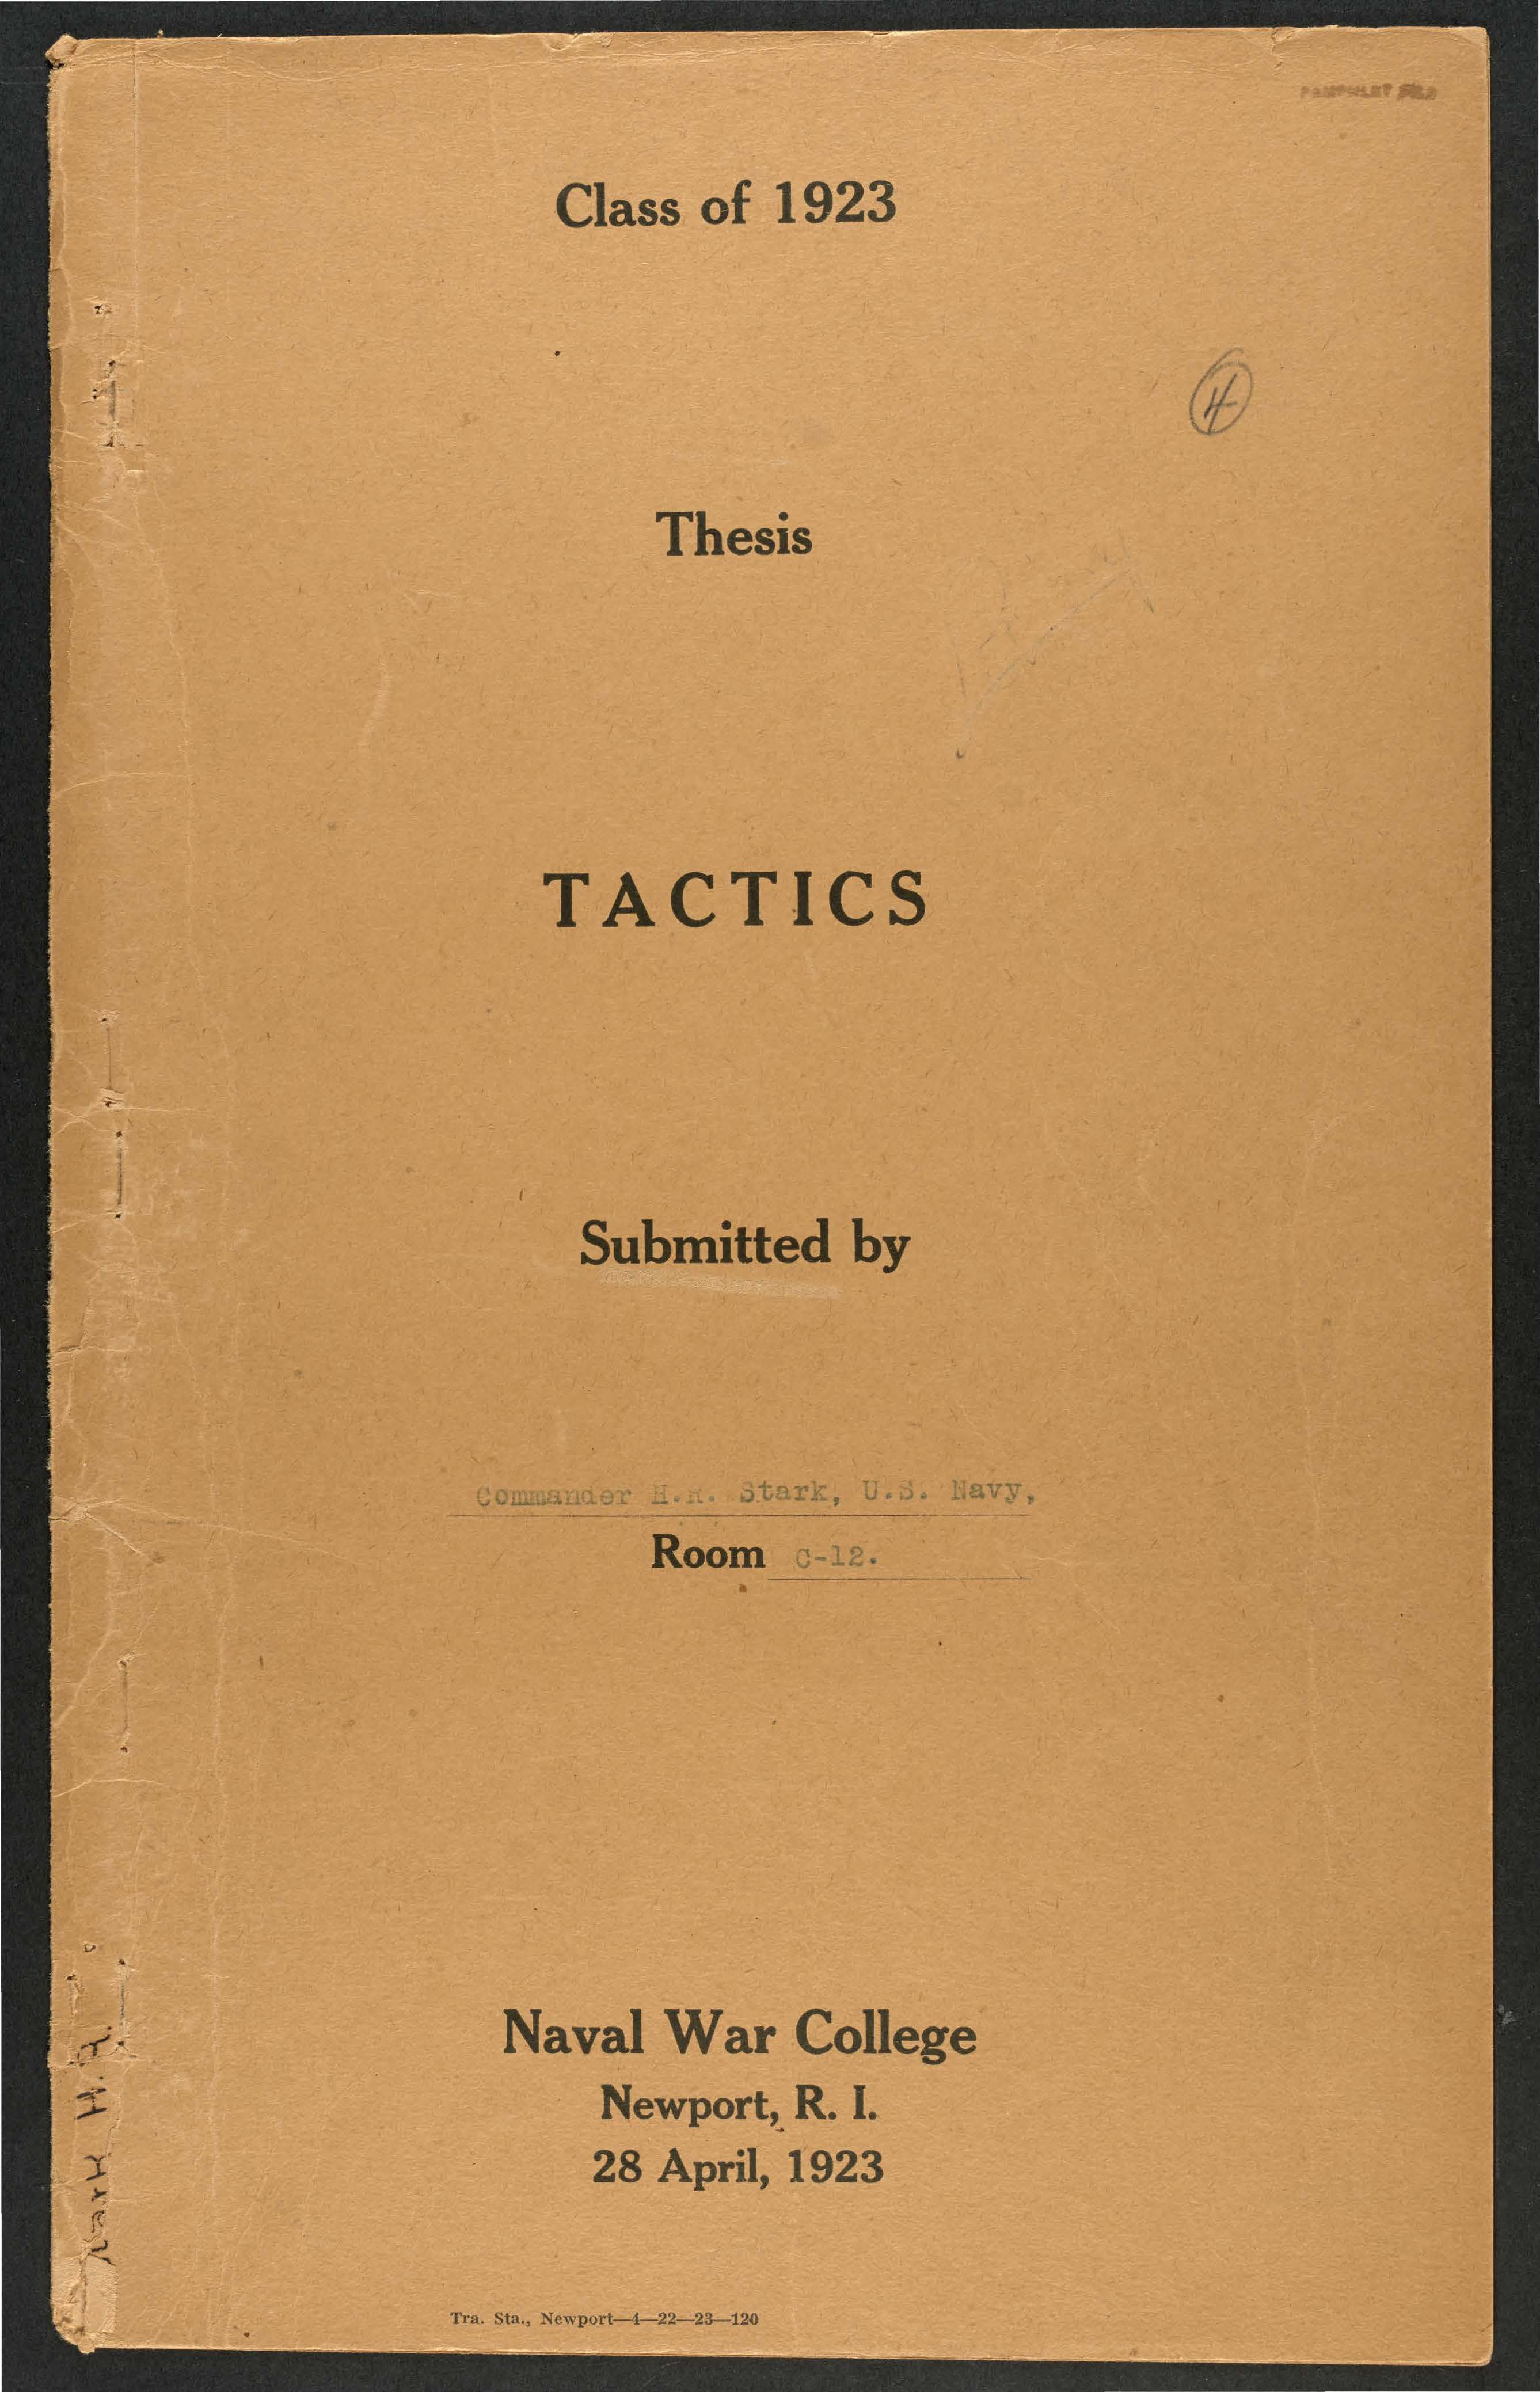 Tactics, Harold R. Stark